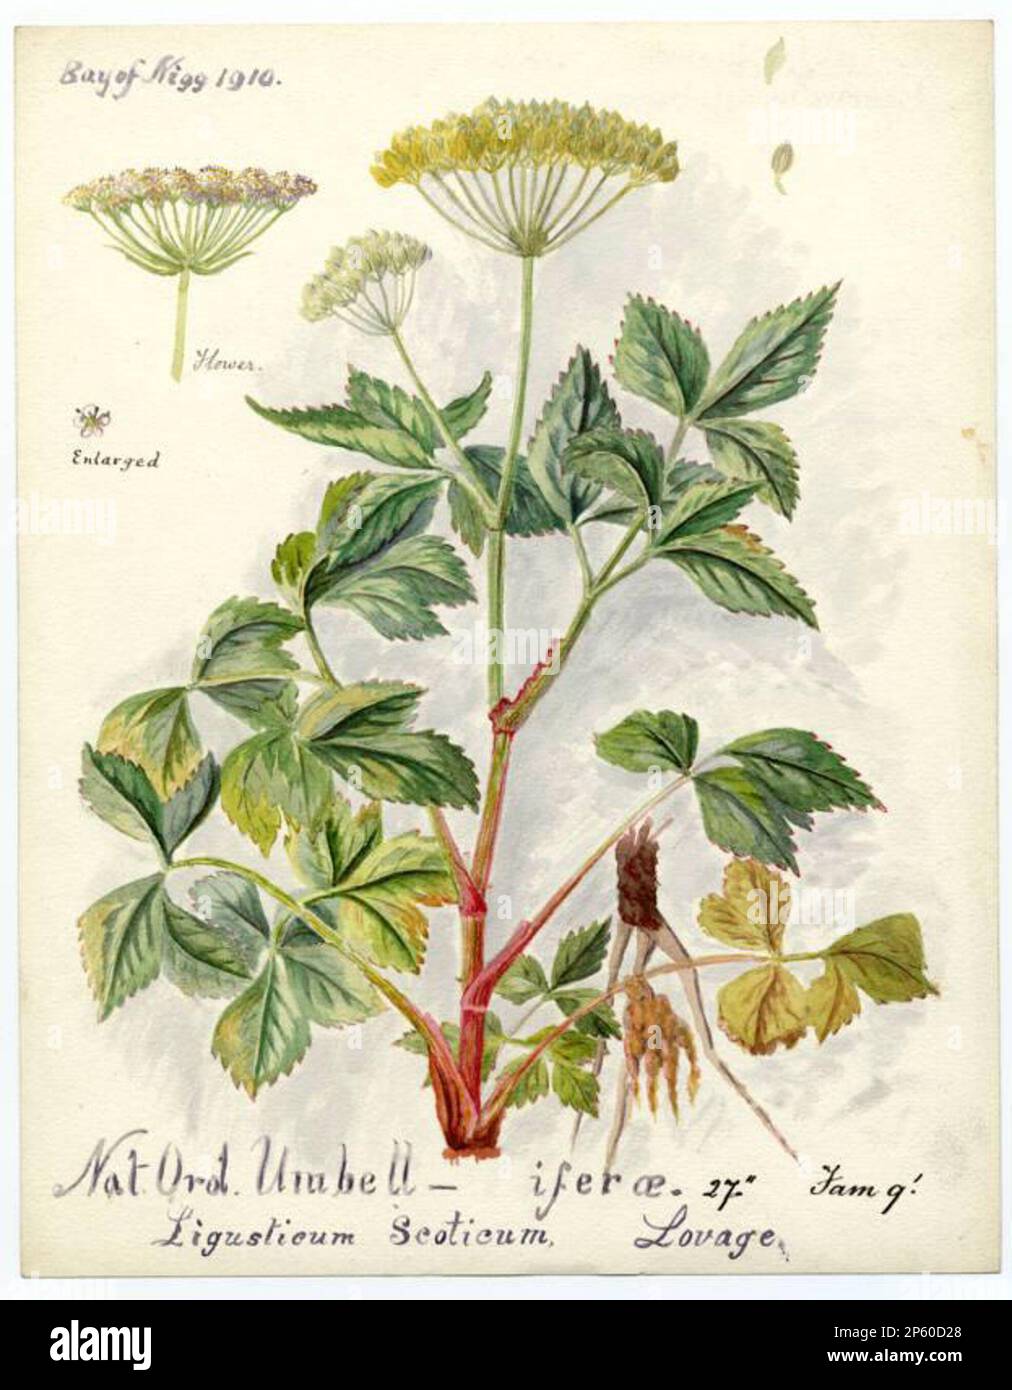 lovage (ligusticum scoticum), William Catto (Aberdeen, Scotland, 1843 - 1927) 1910 Stock Photo